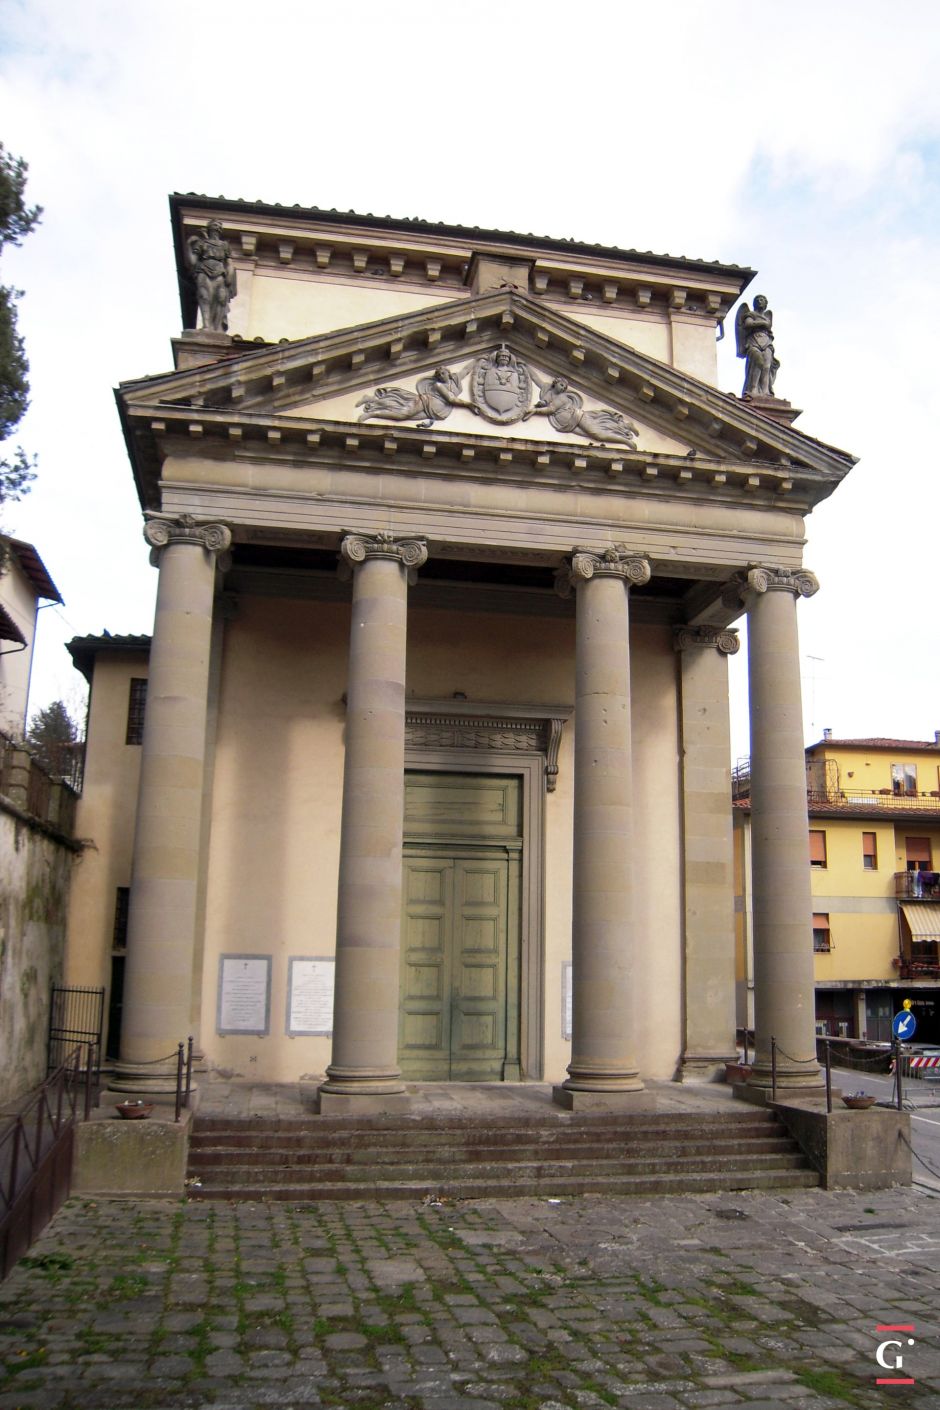 Sant’Onofrio Oratory